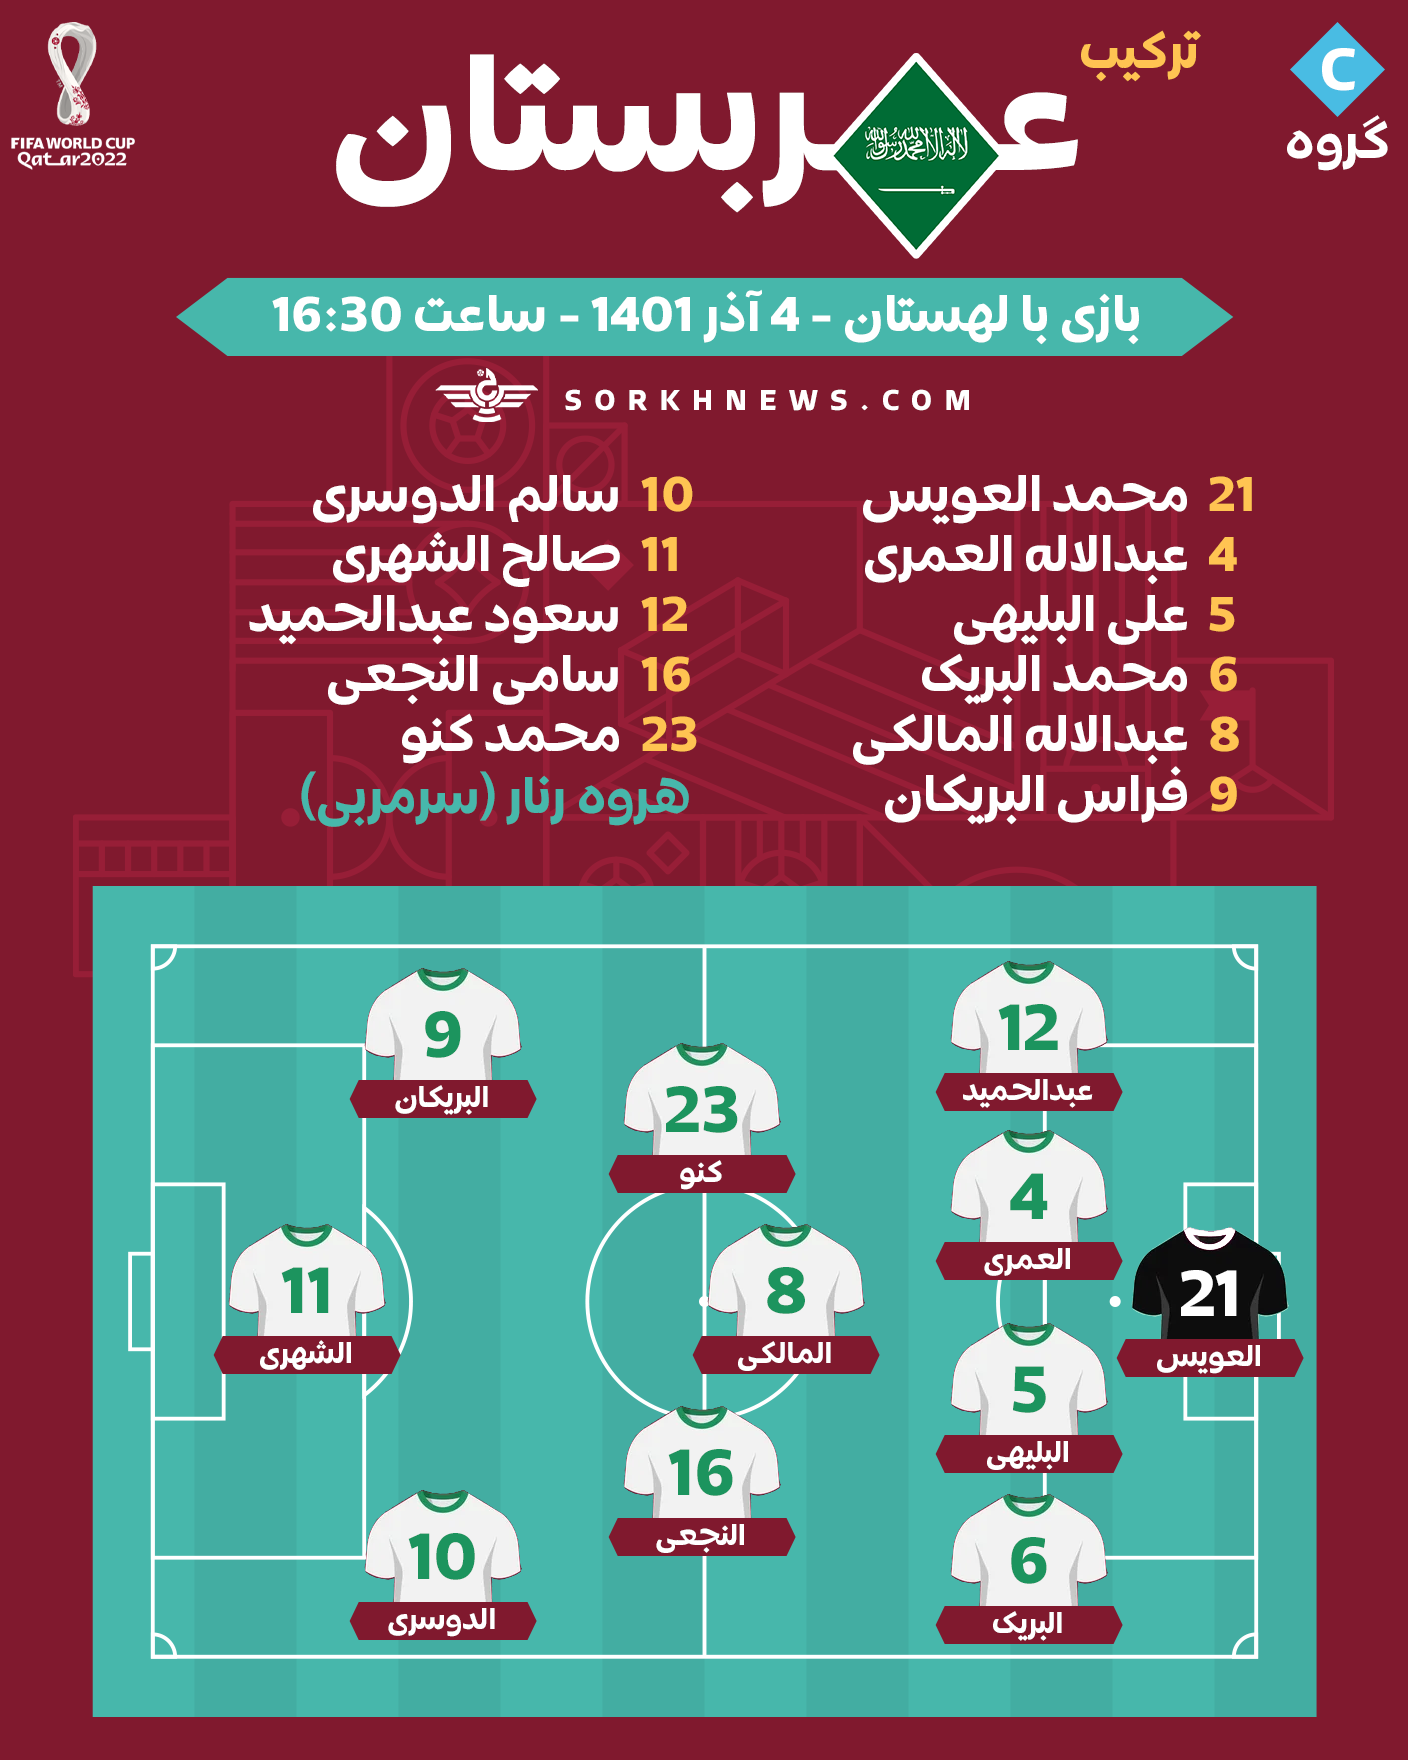 شماتیک ترکیب تیم ملی فوتبال عربستان در مقابل تیم ملی فوتبال لهستان